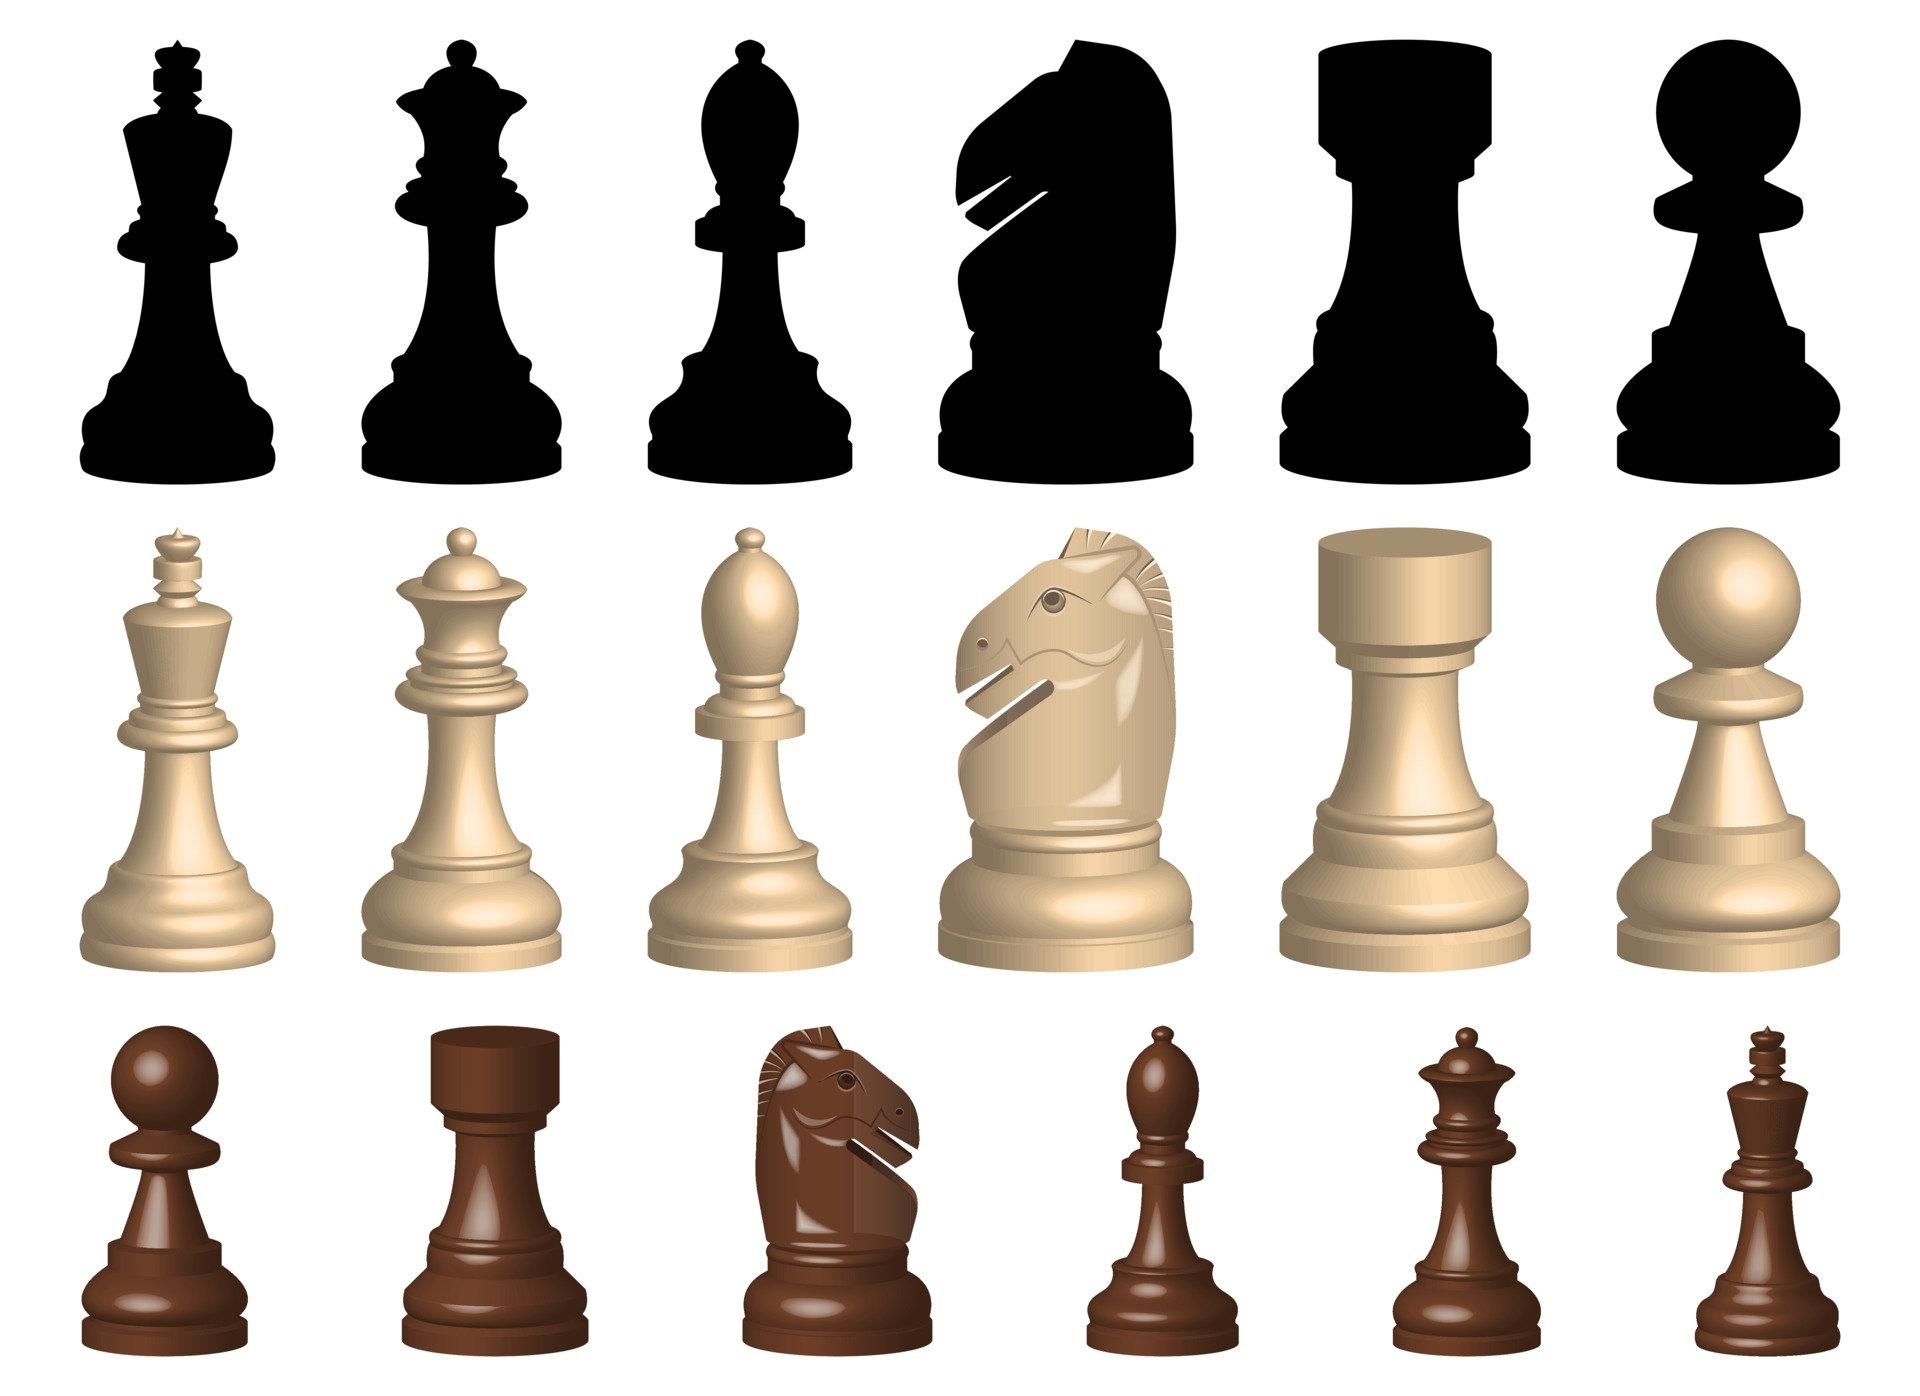 Placa de xadrez vazia ilustração do vetor. Ilustração de xadrez